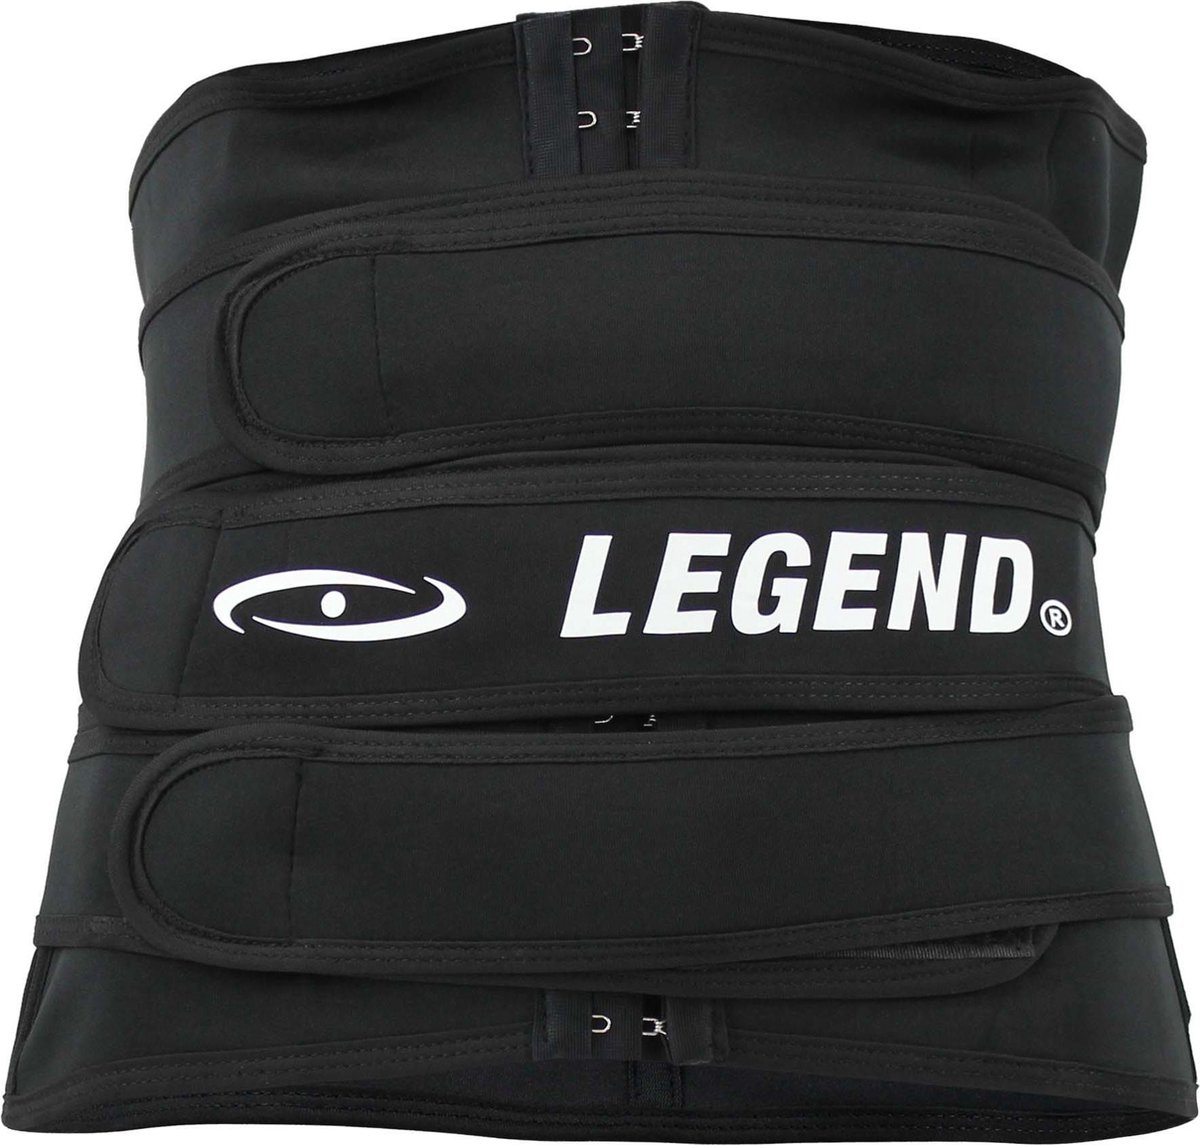 Legend Premium Waist trainer 4XL